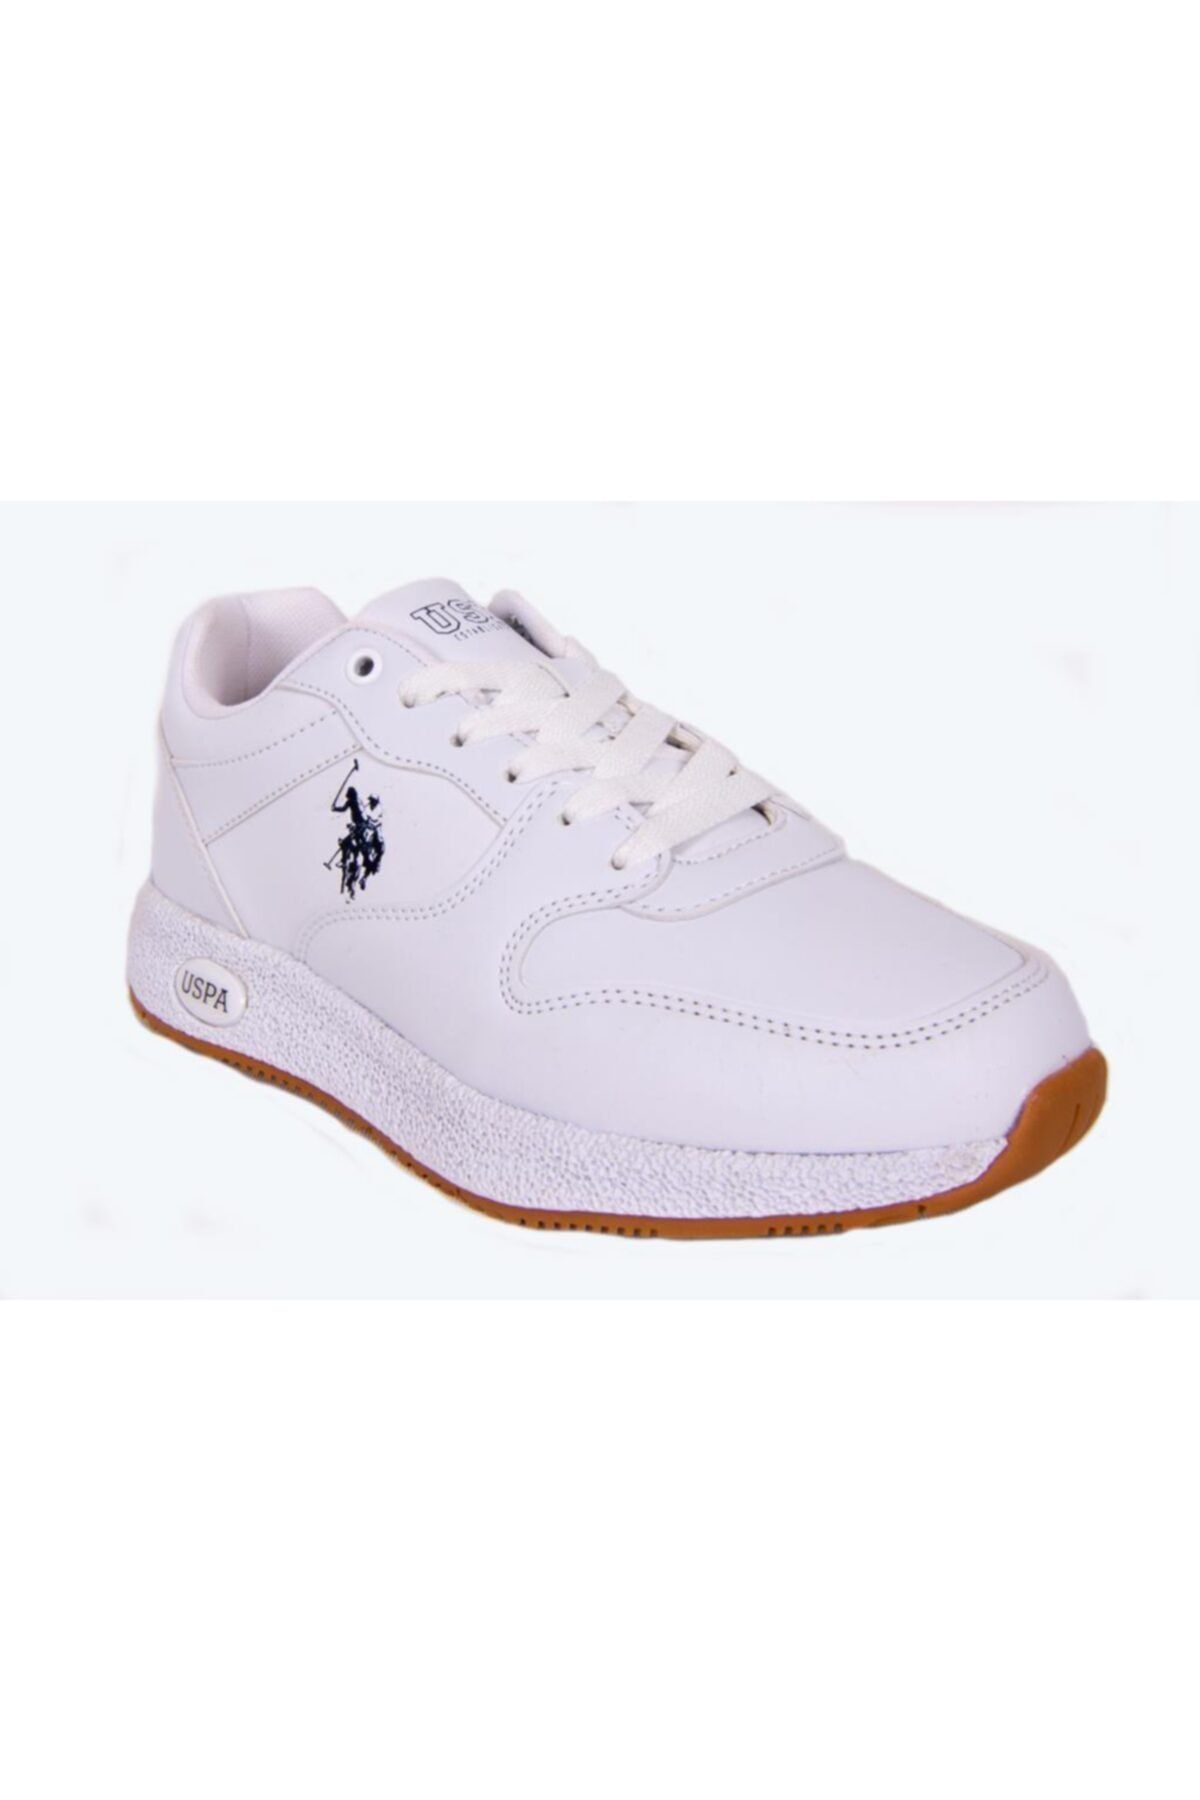 U.S. Polo Assn. ANGEL Beyaz Kadın Sneaker Ayakkabı 100548835